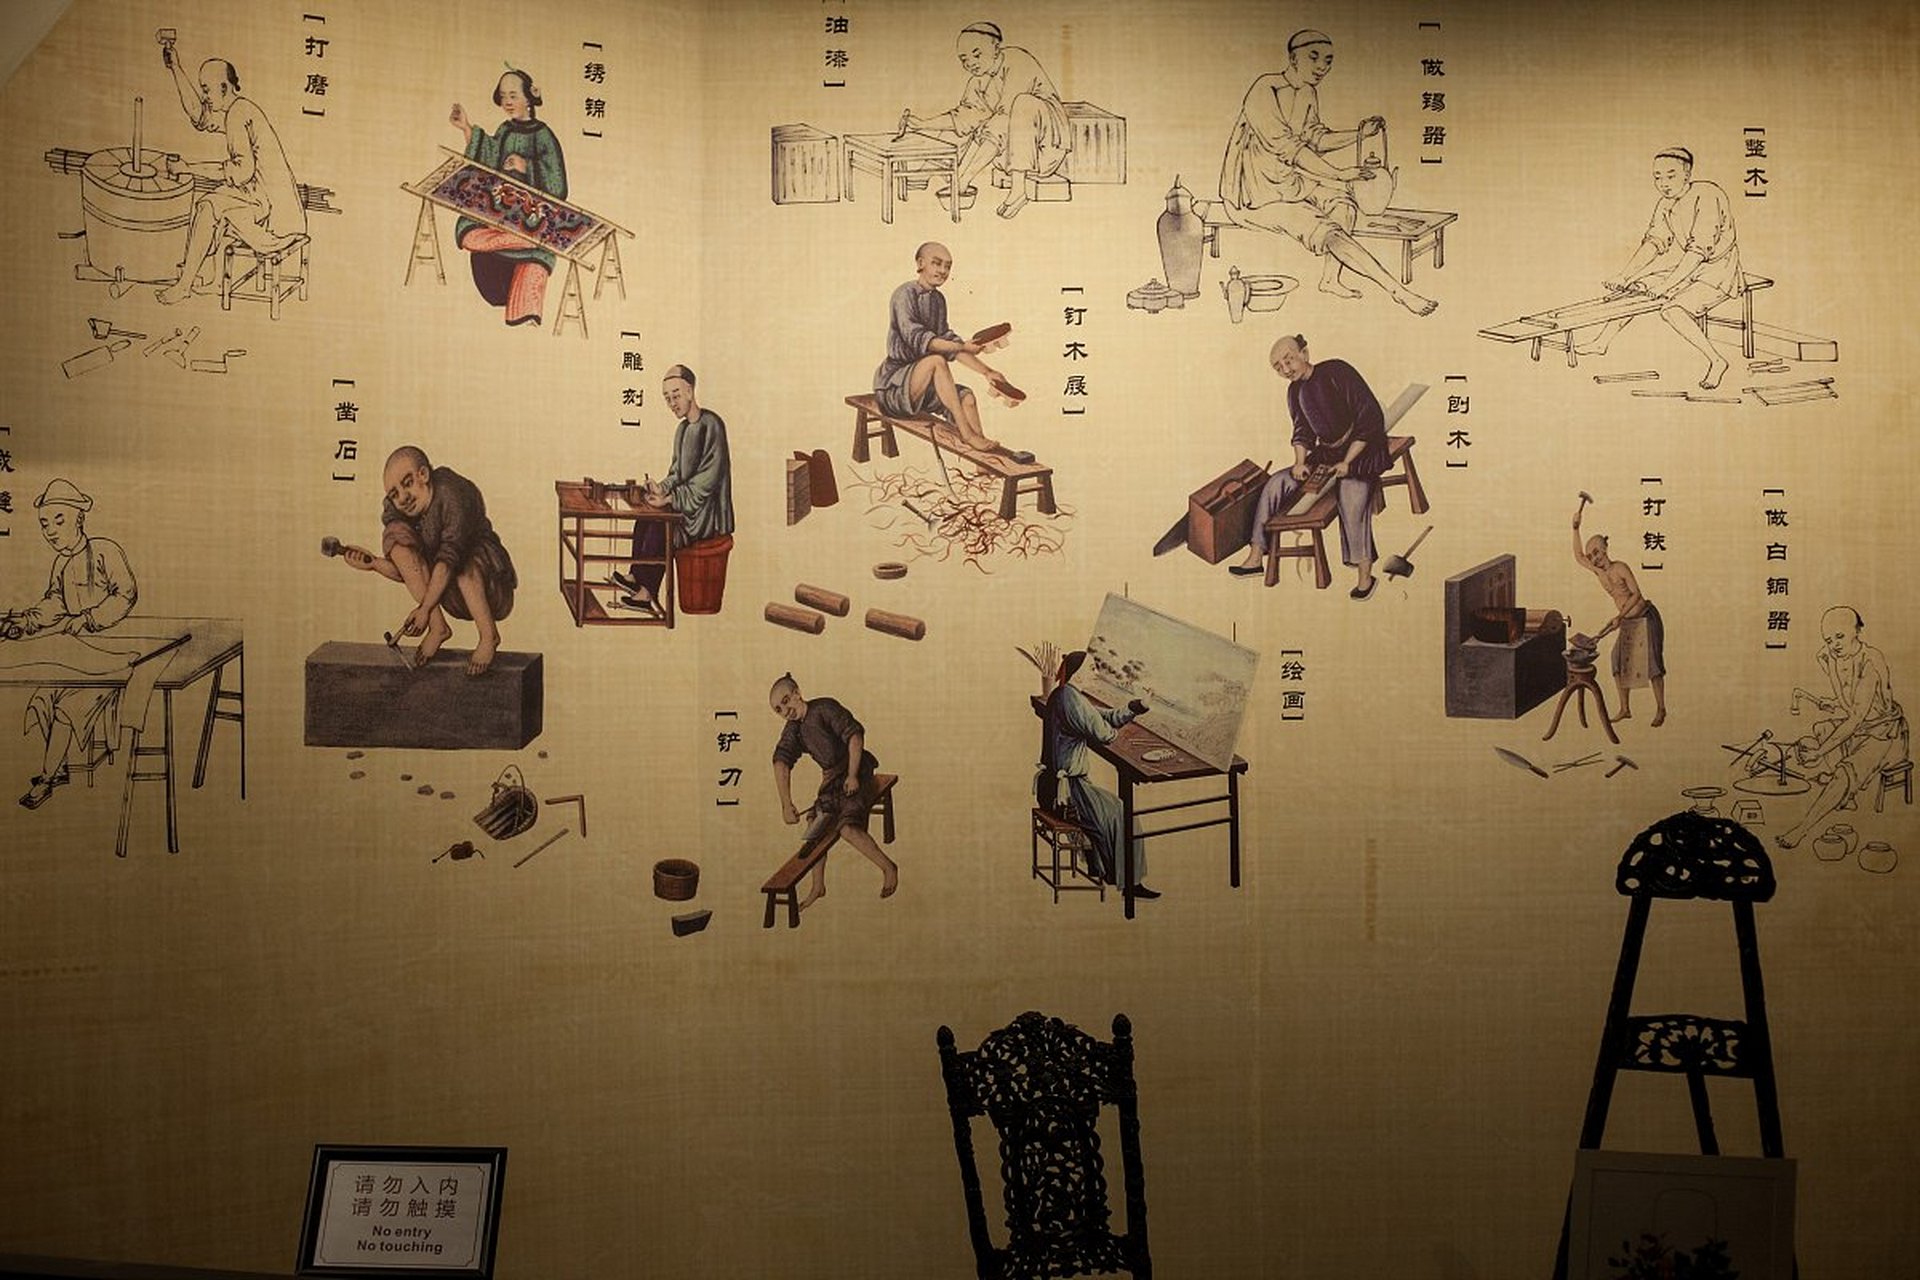 94唐朝造纸术的水平  唐朝是中国历史上文化,科技,艺术发展的鼎盛